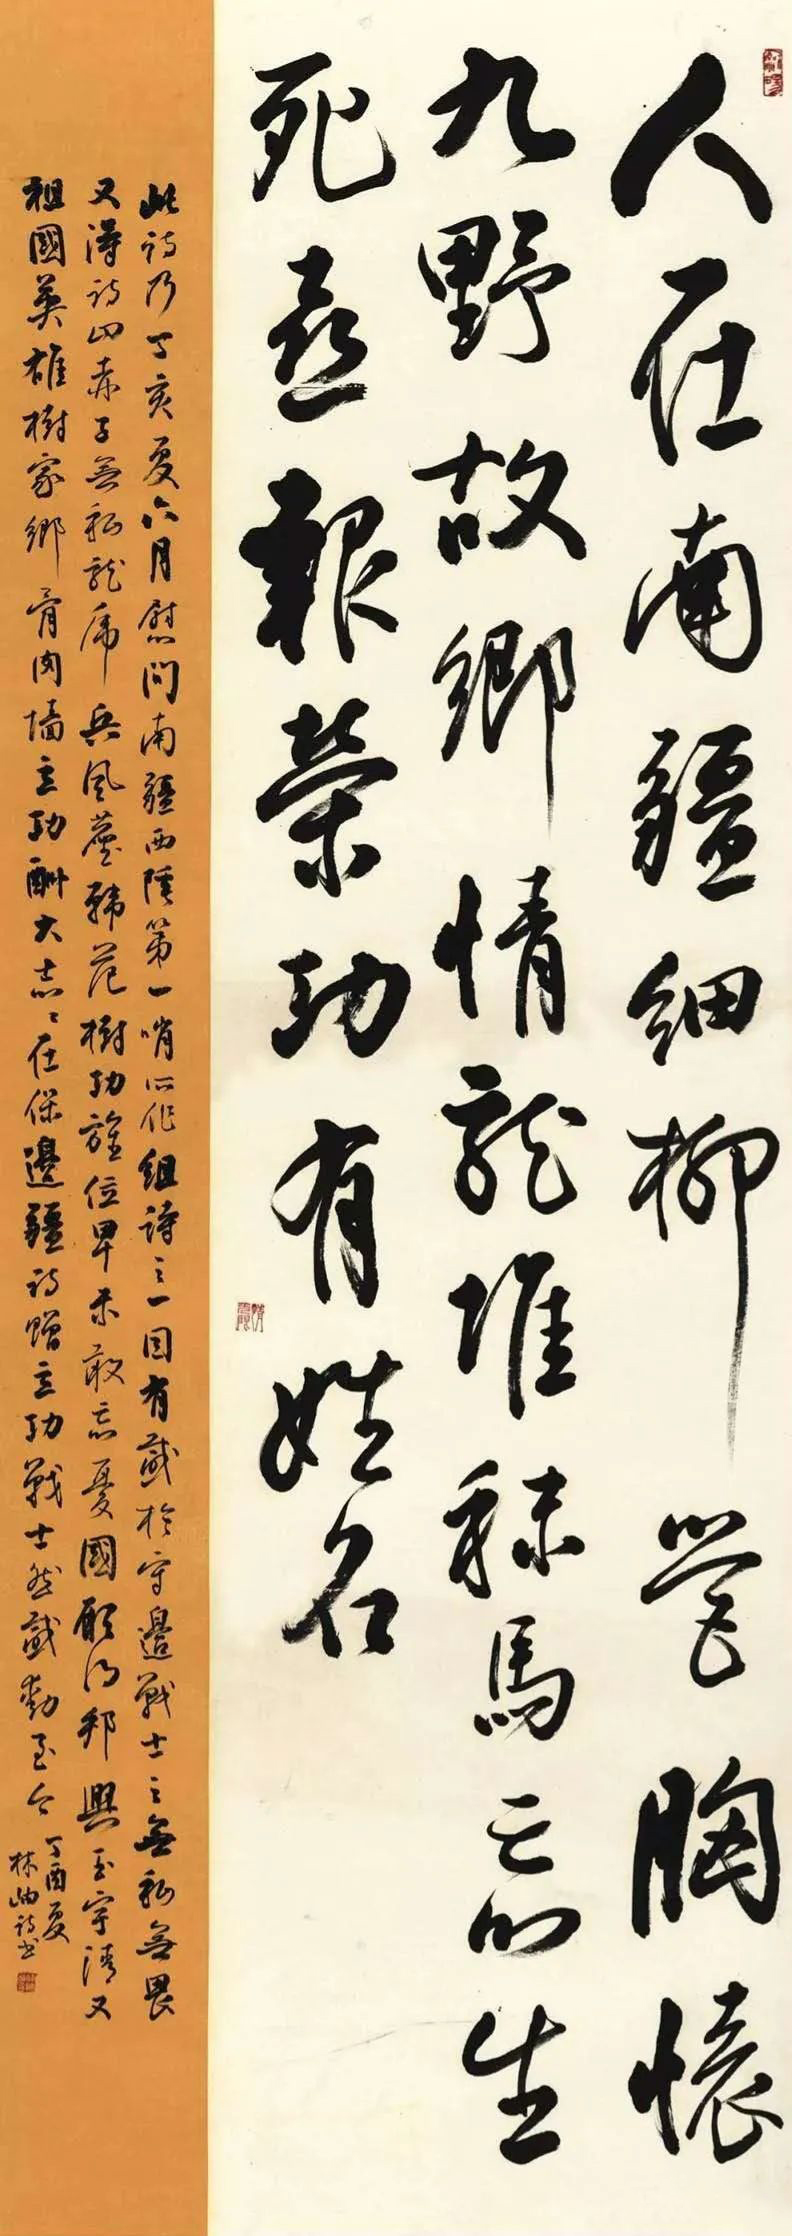 「艺惠藏」国画大师范曾和前妻林岫书法对比谁的更有艺术价值?